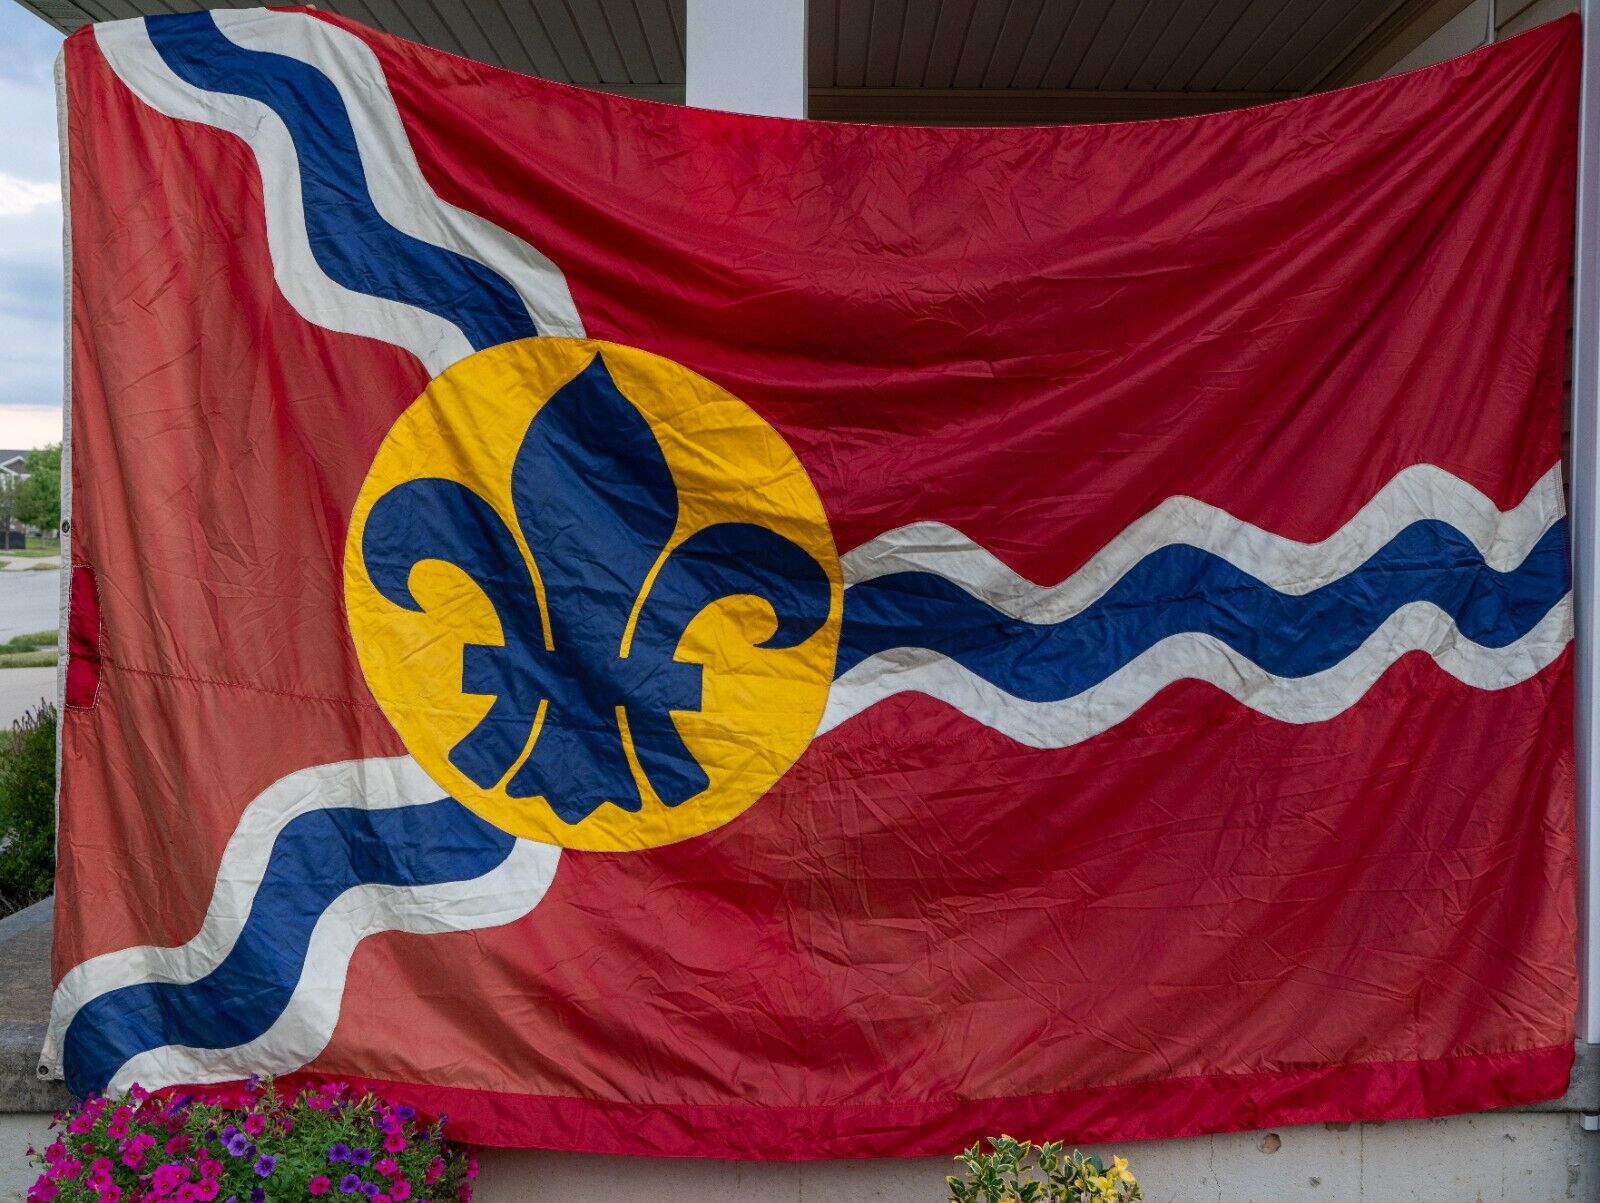 St. Louis City Flag vintage 1960's 12' x 8' Original STL MO Flag